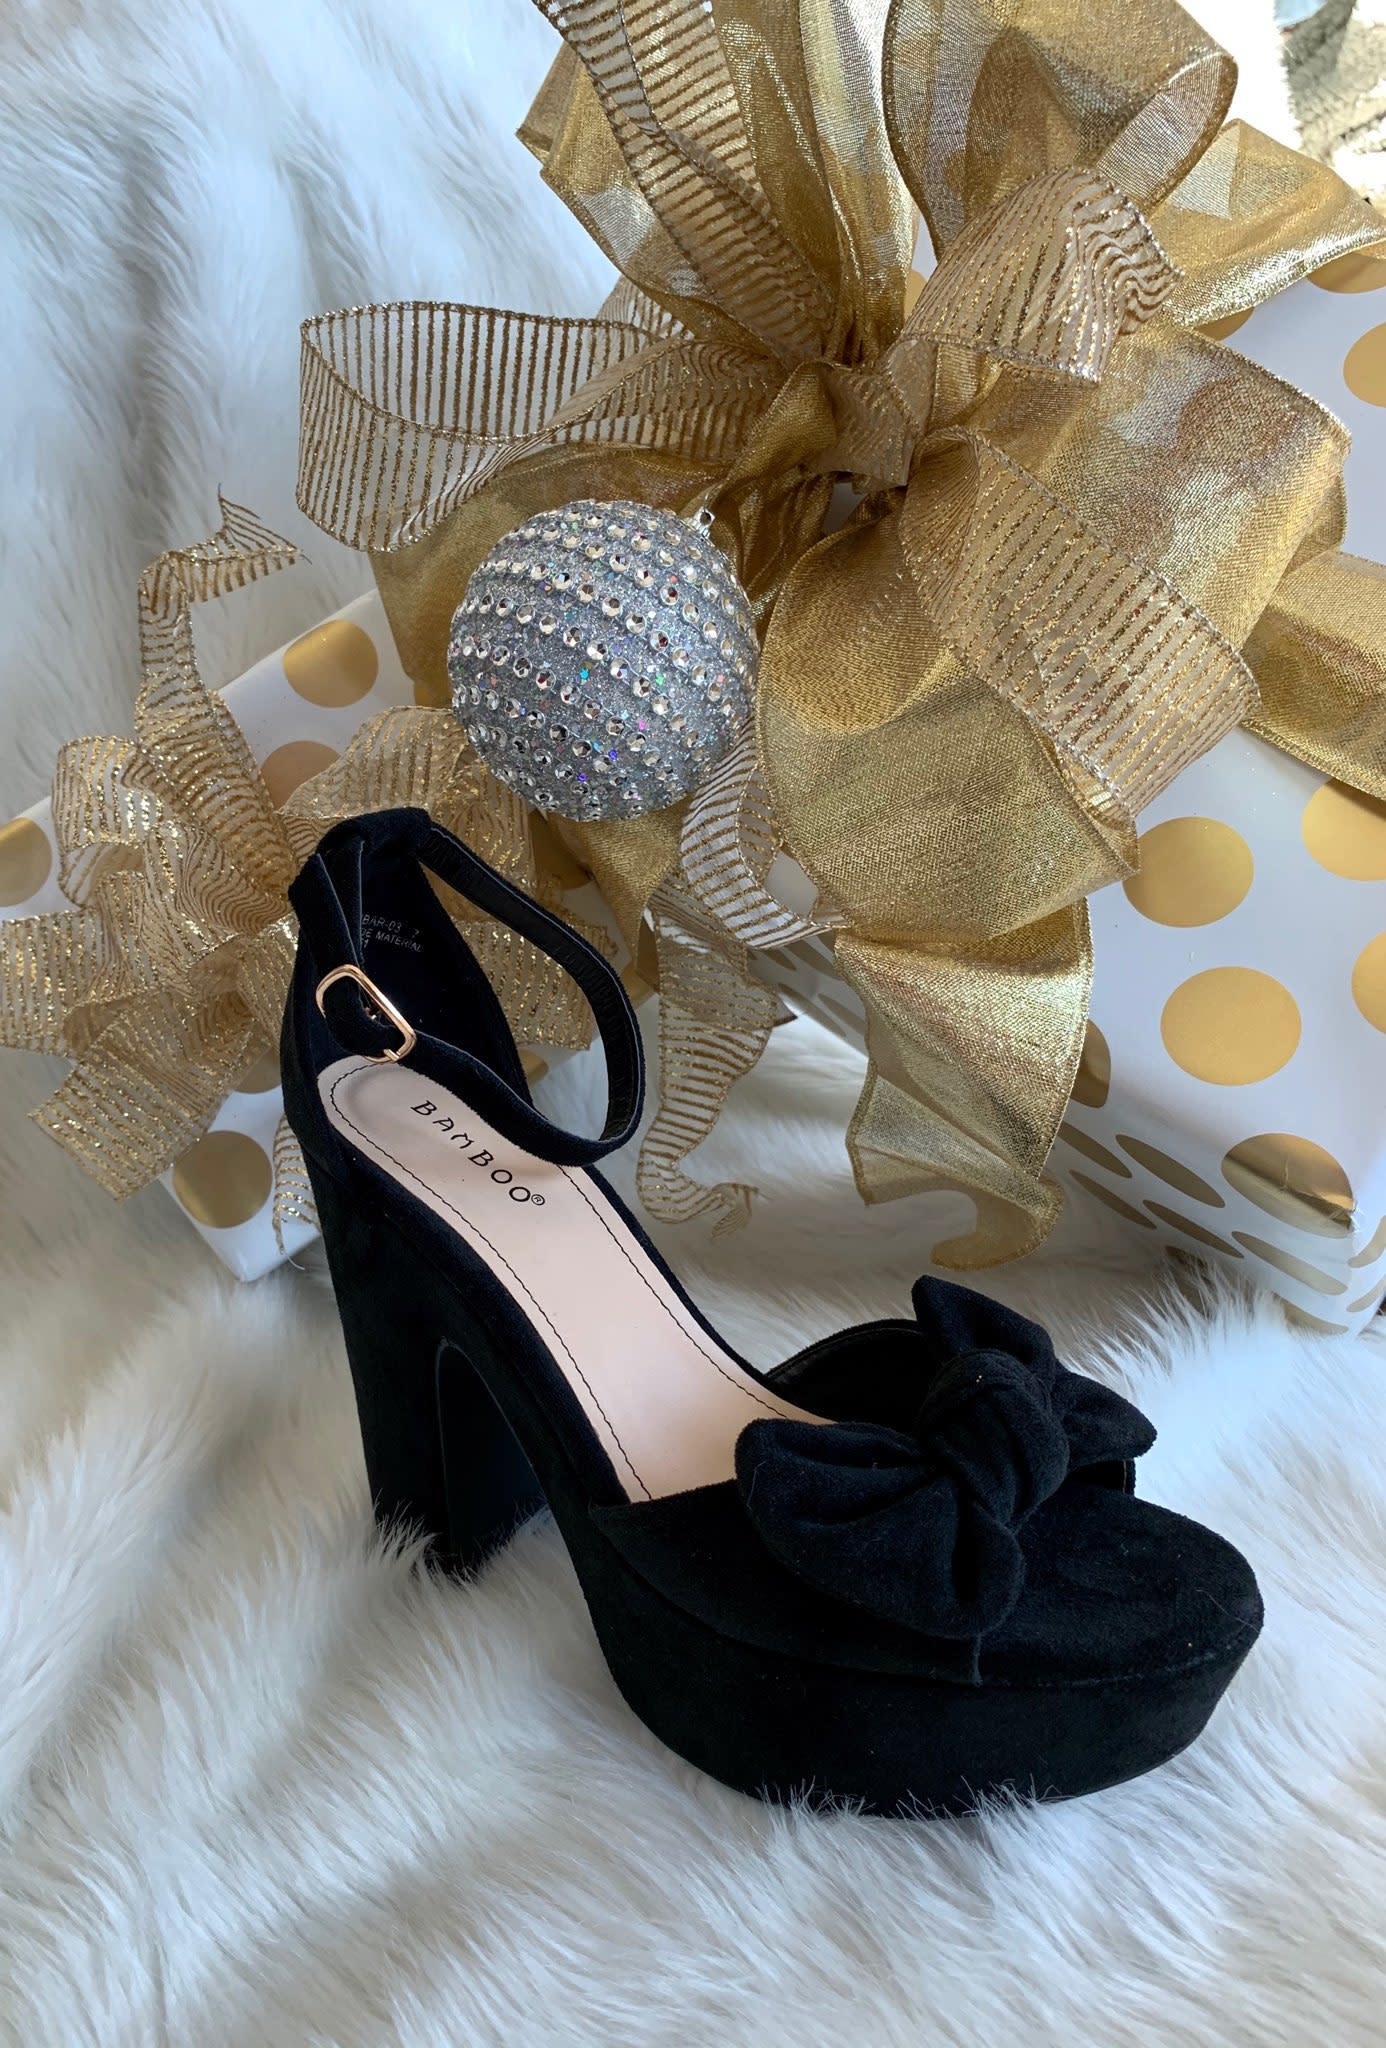 black heels with tie